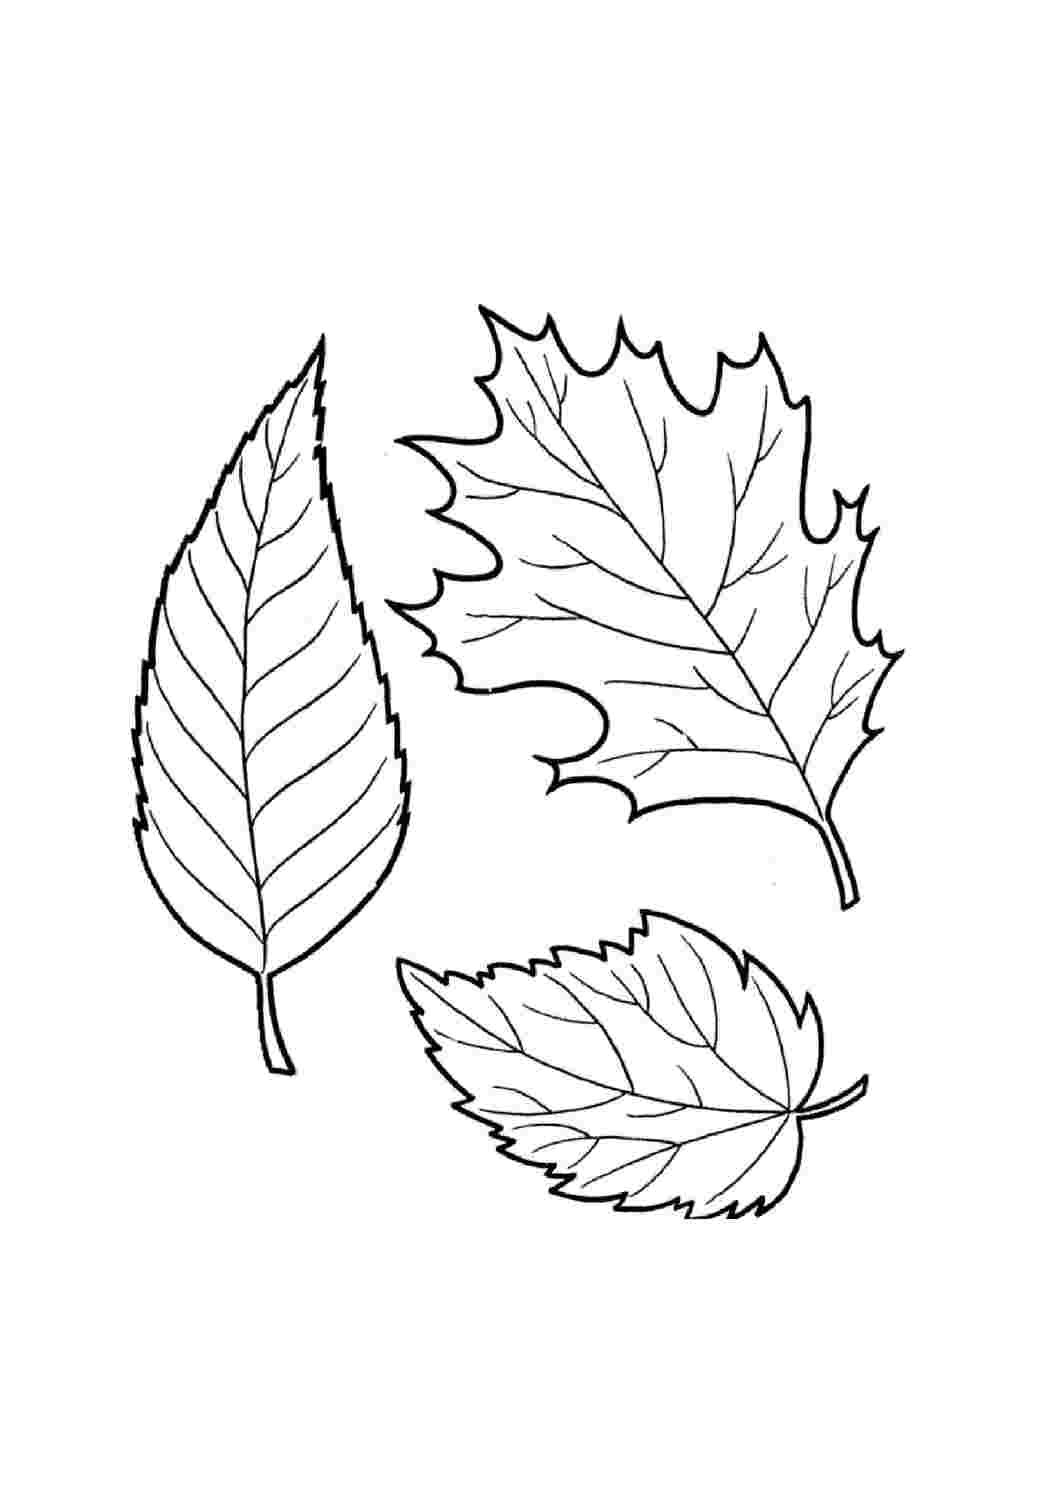 Шаблоны и картинки листьев разных деревьев | Узор для вышивки, Рисунки, Раскраски